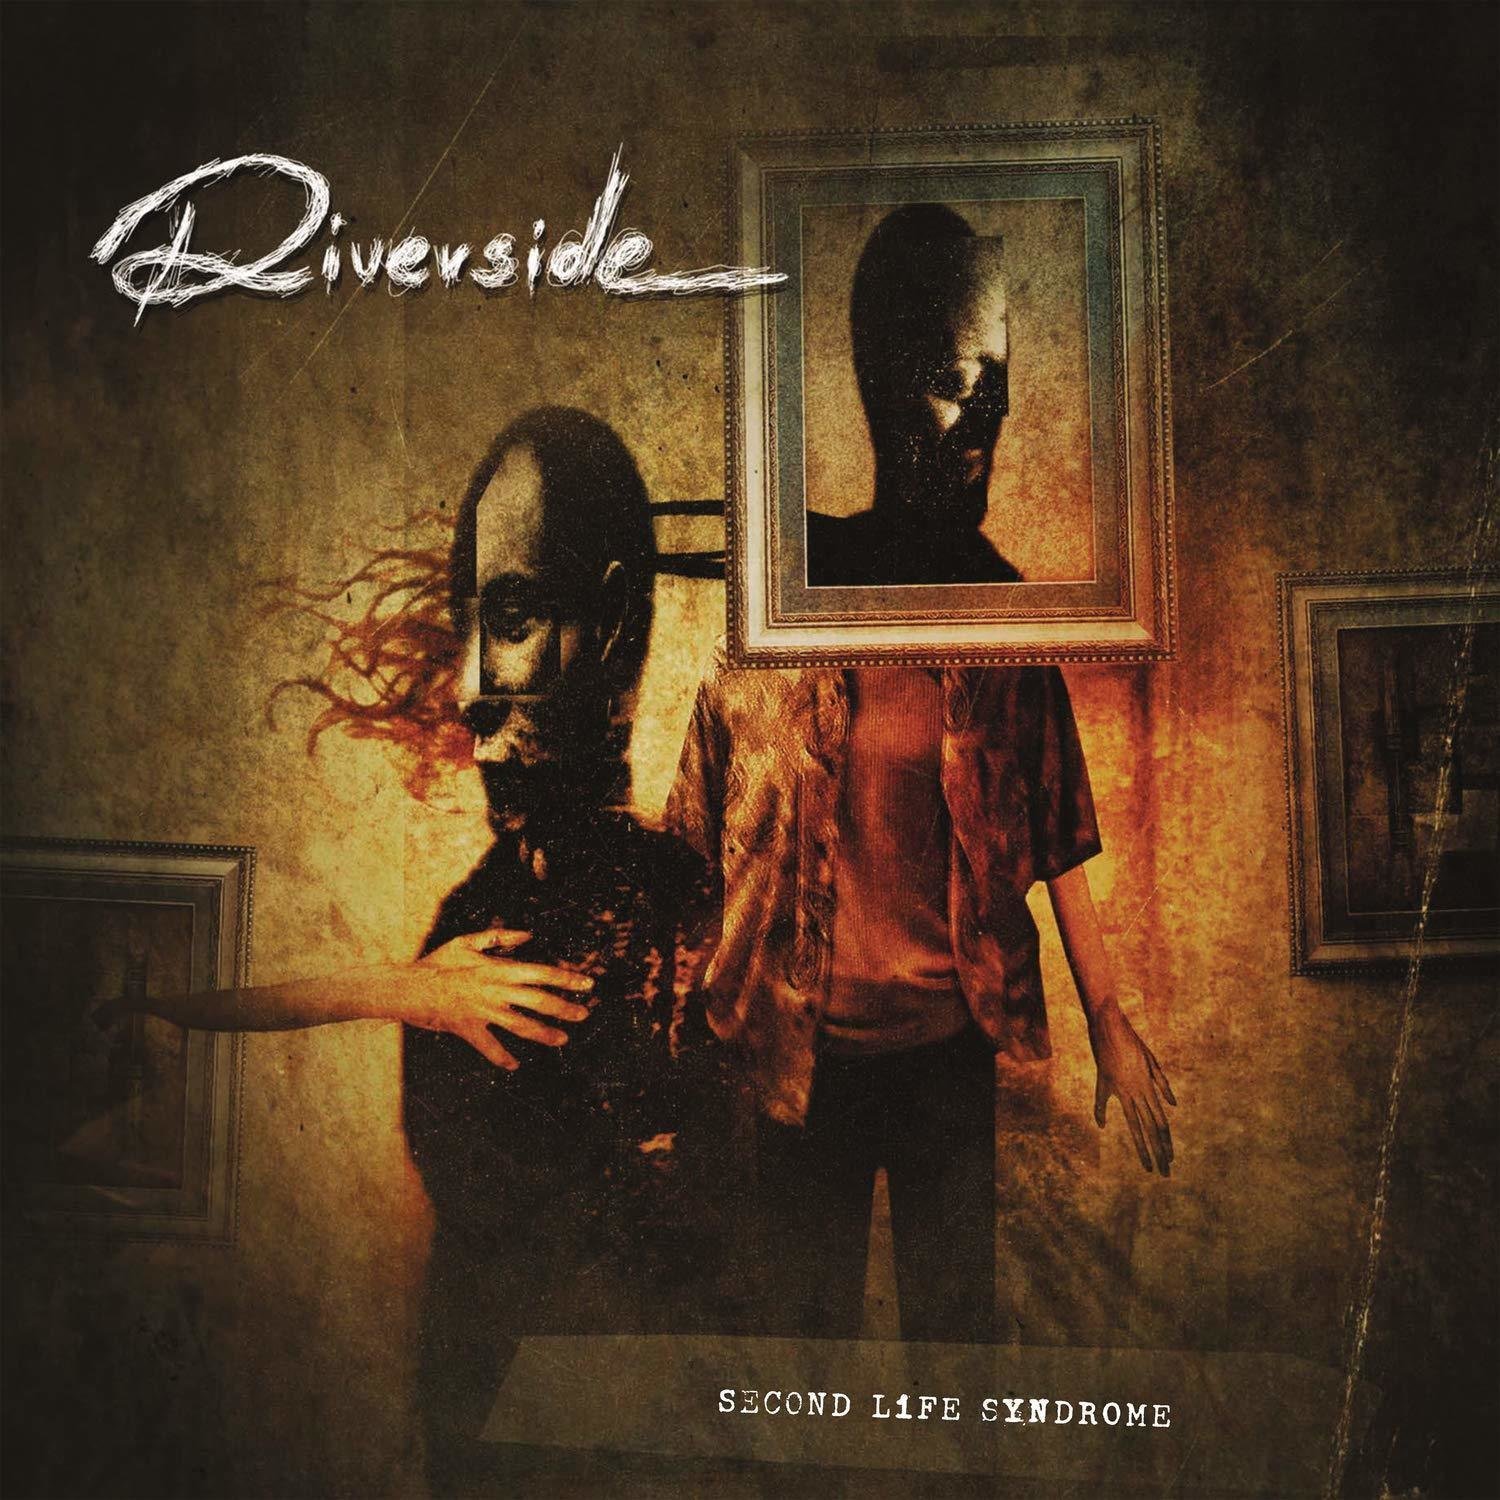 Hanglemez Riverside Second Life Syndrome (Reissue) (Gatefold Sleeve) (Vinyl LP)